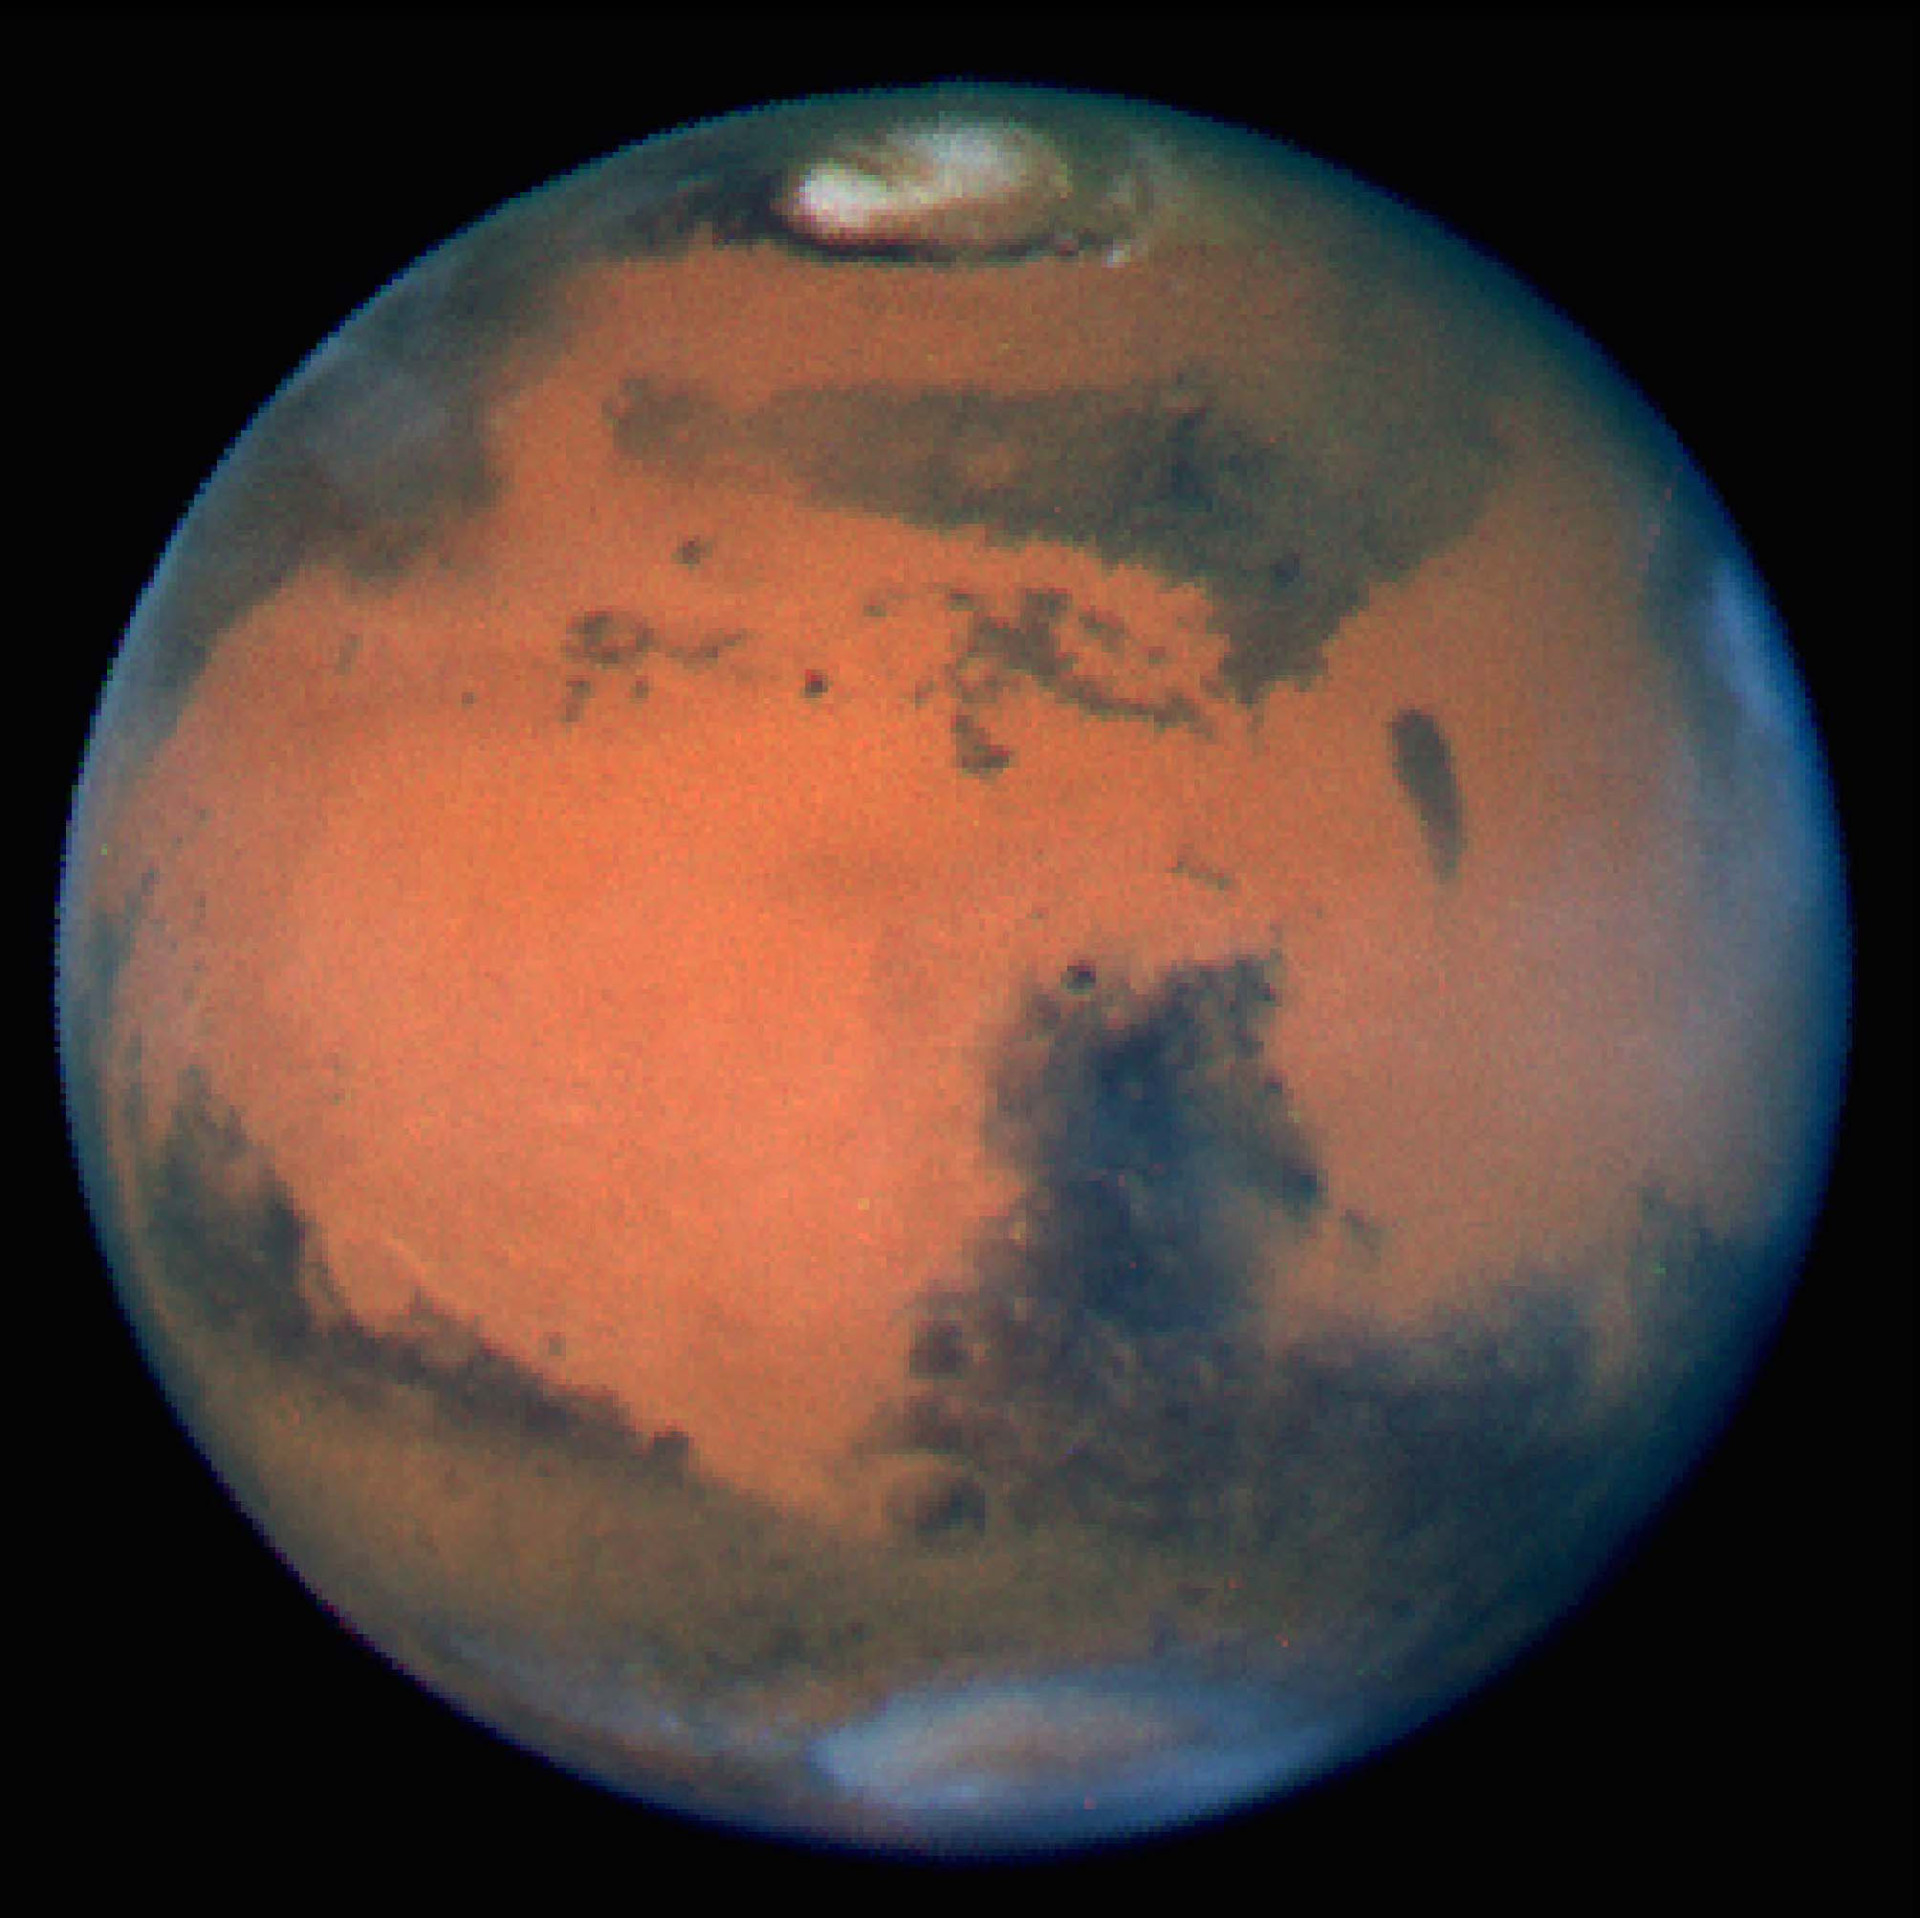 <p>Este retrato incrivelmente nítido de Marte foi tirado quando o planeta estava a cerca de 100 milhões de quilômetros da Terra.</p>